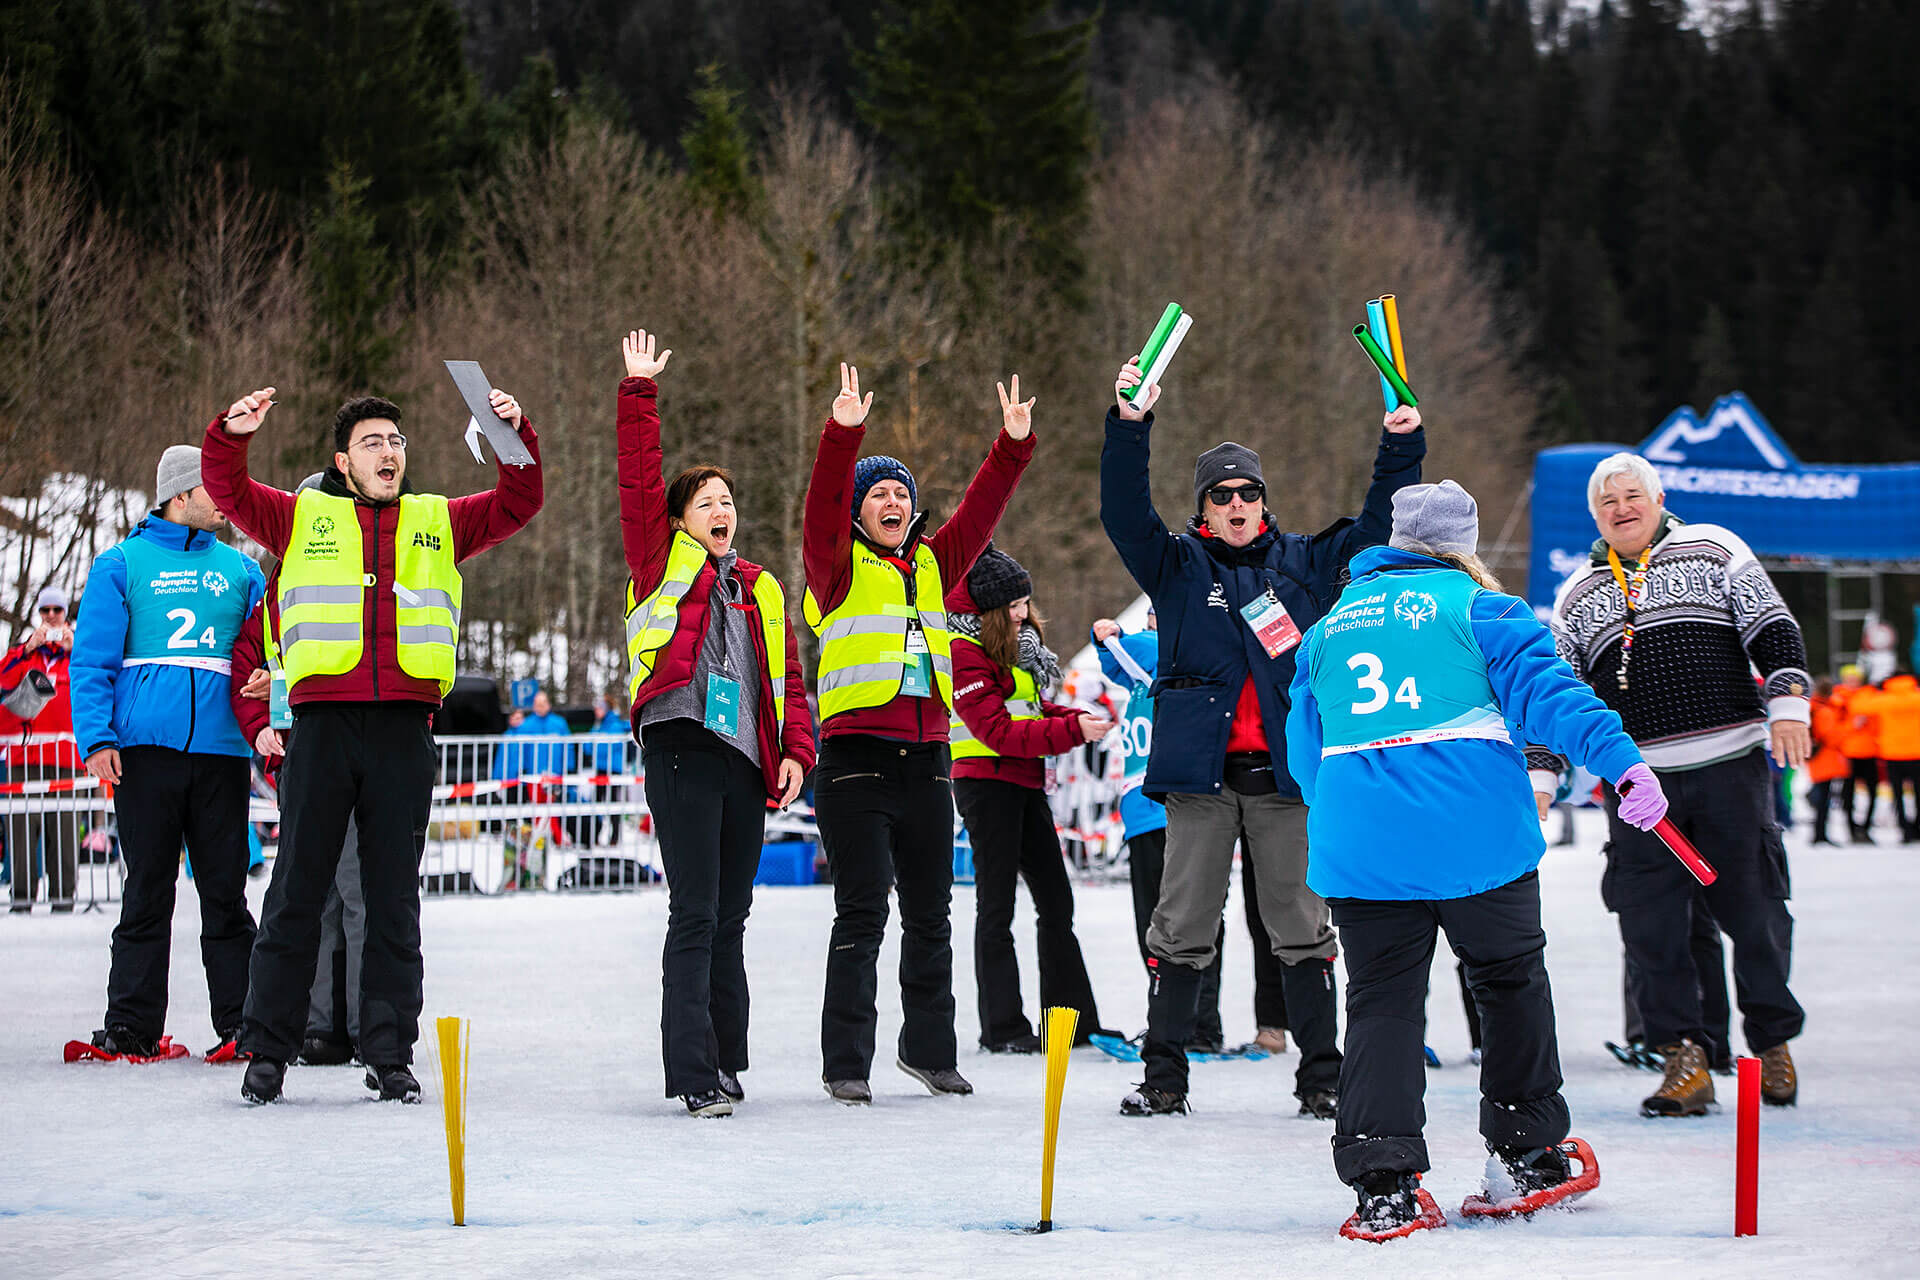 Winterspiele von Special Olympics Deutschland 2020: Beste Laune beim Zieleinlauf auf Schneeschuhen